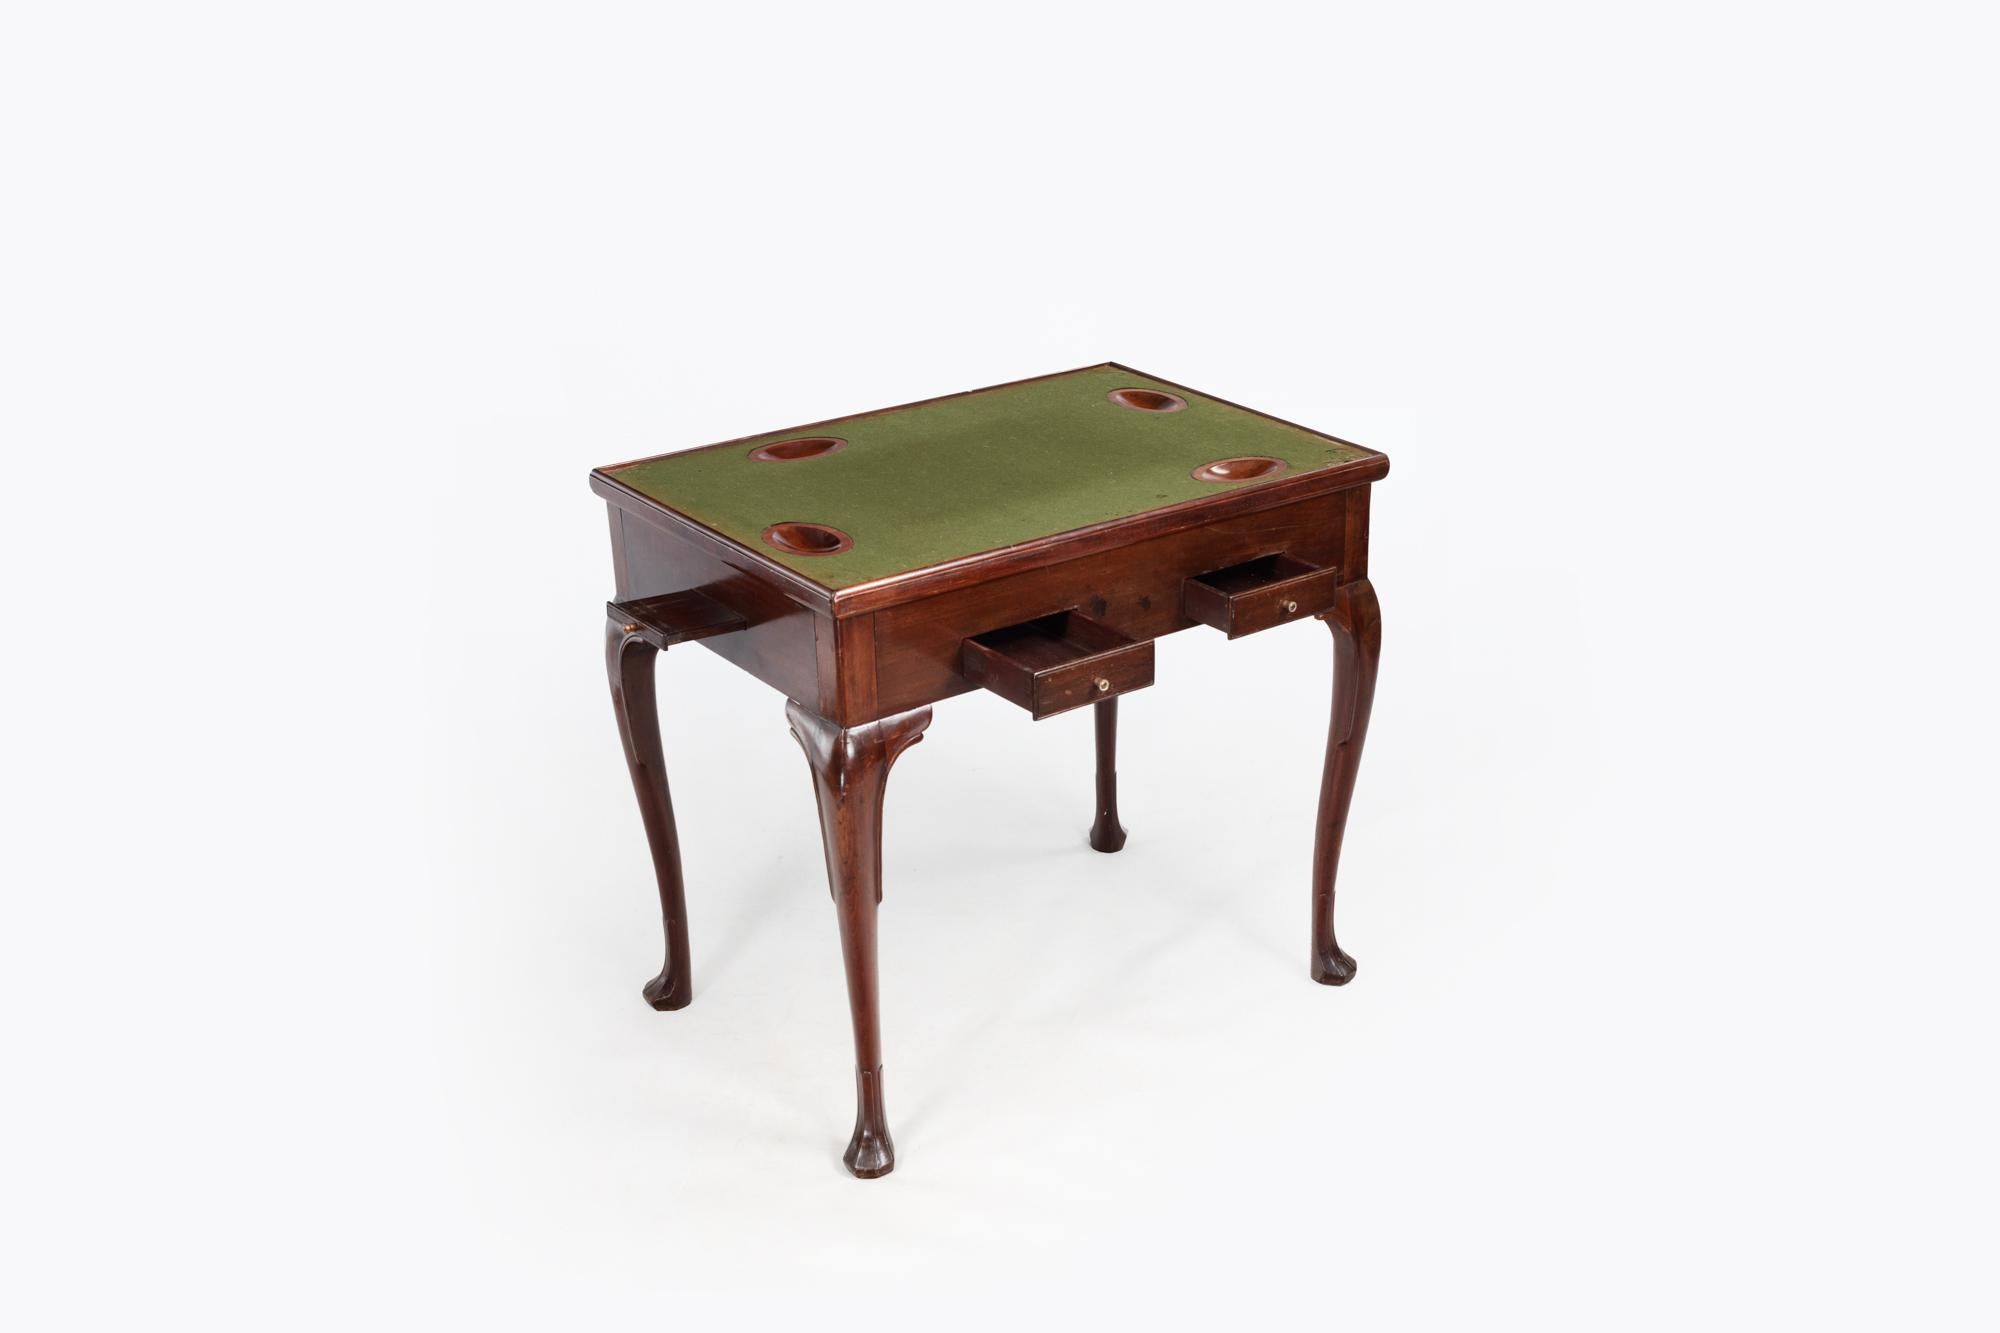 Irischer georgianischer Mahagoni-Spieltisch aus dem 18. Jahrhundert mit abnehmbarer rechteckiger Platte. Die wendbare, rechteckige, gewölbte Platte mit Baise-Spielfläche und versenkten Thekenmulden befindet sich über dem Fries, in dem ausziehbare